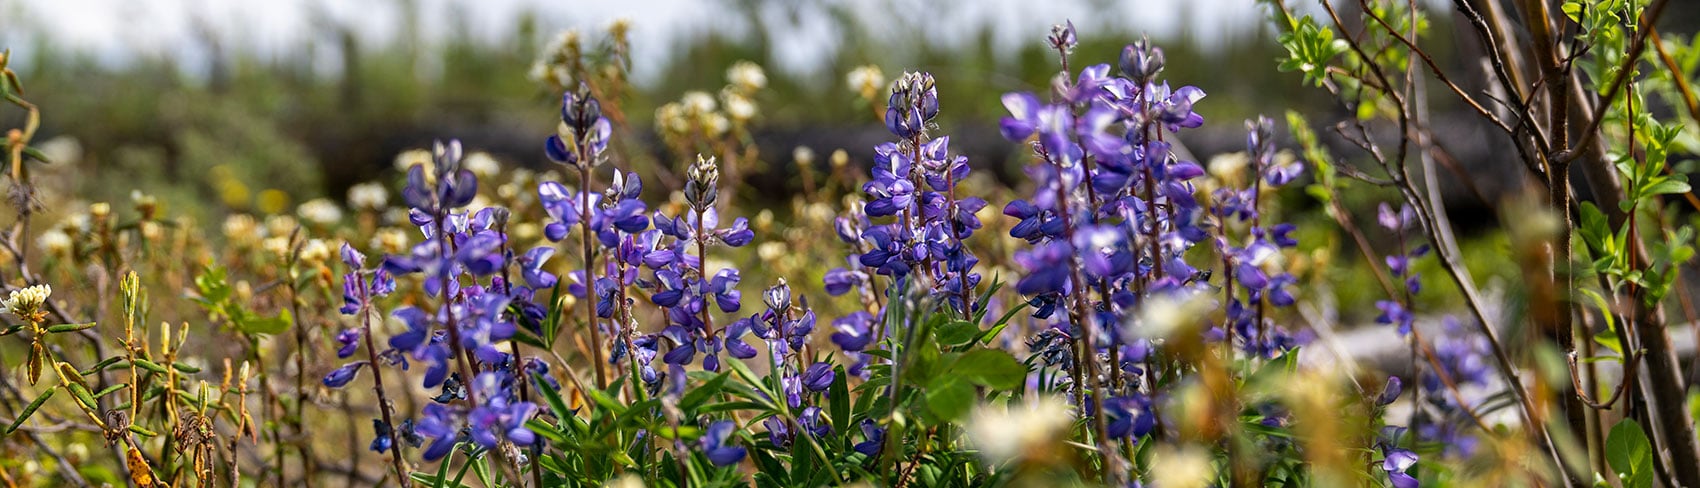 Lupine wildflowers in a field.